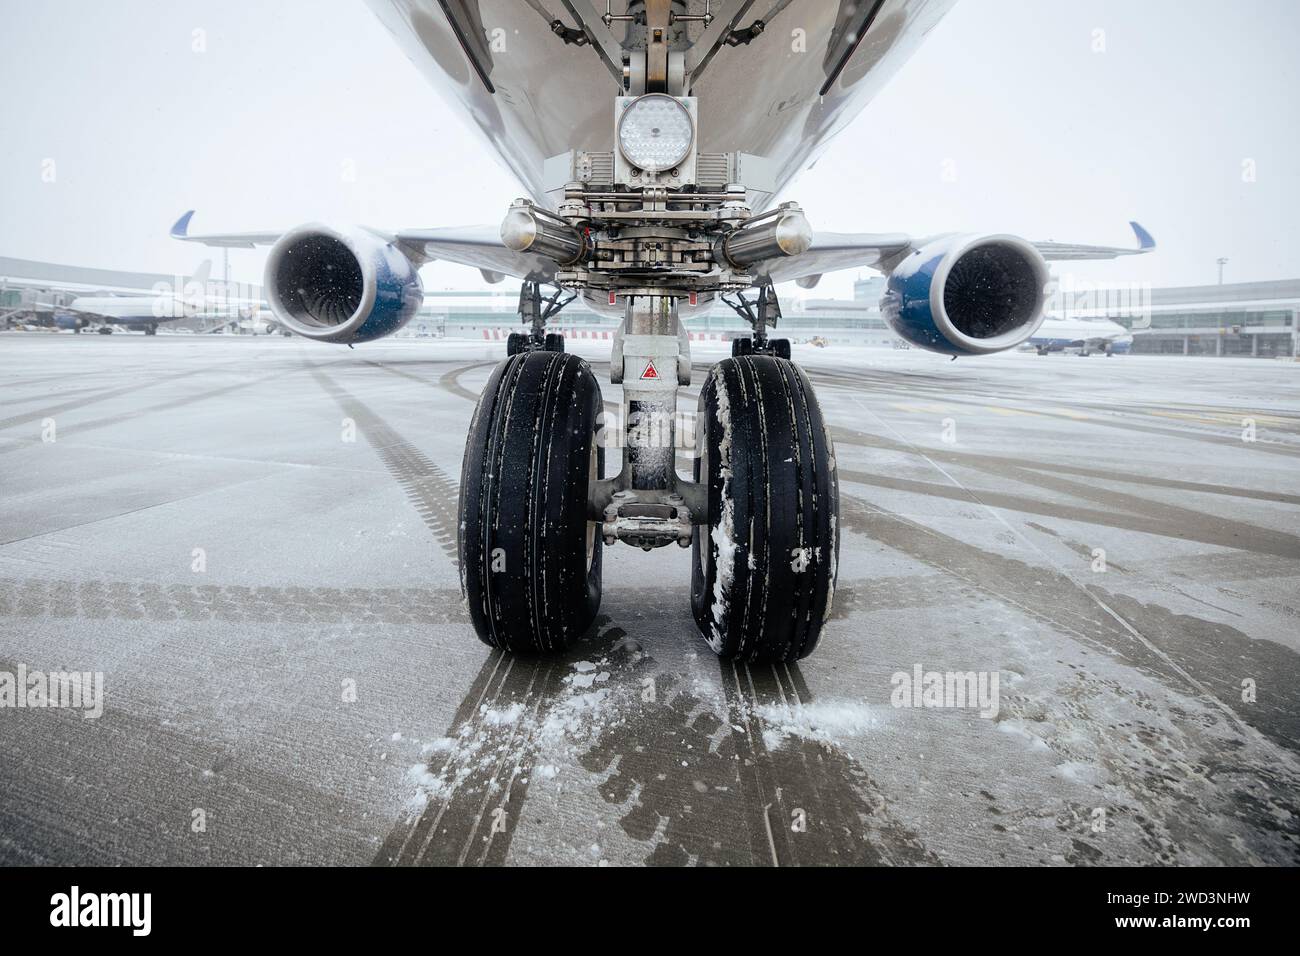 Vorderansicht des Fahrwerks des Flugzeugs. Winter frostiger Tag am Flughafen bei Schneefall. Stockfoto